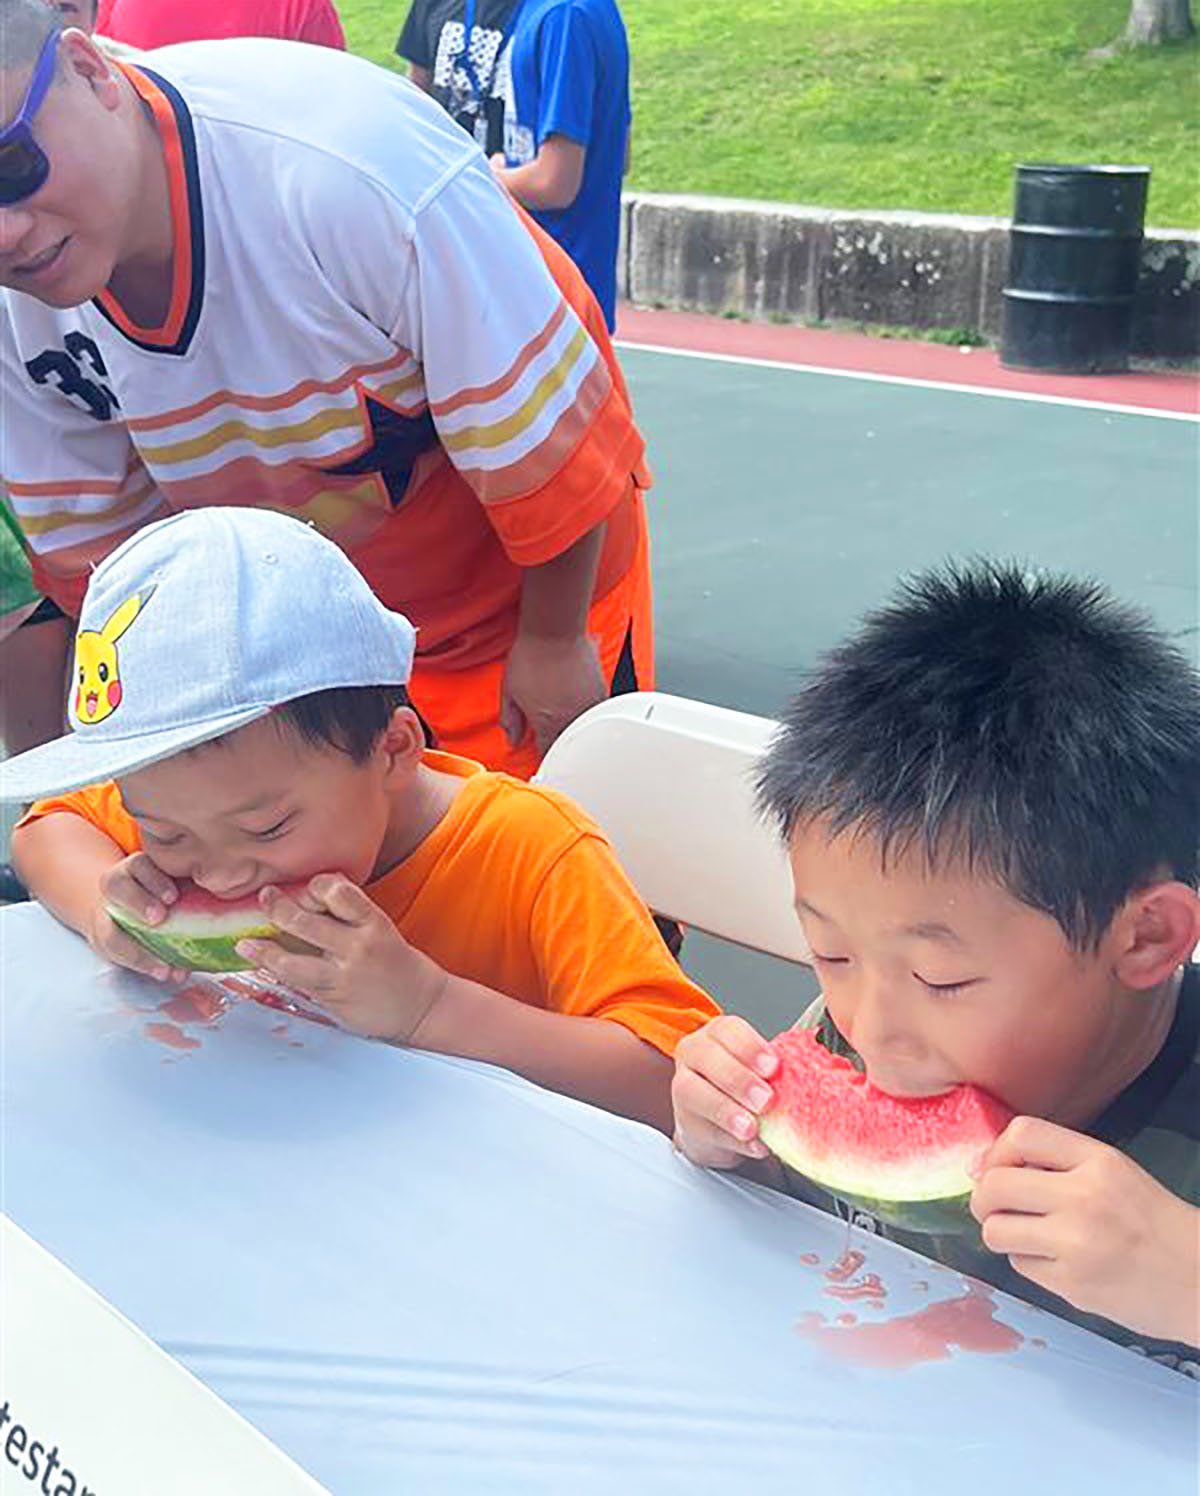 2 boys eating watermelon v1.jpg